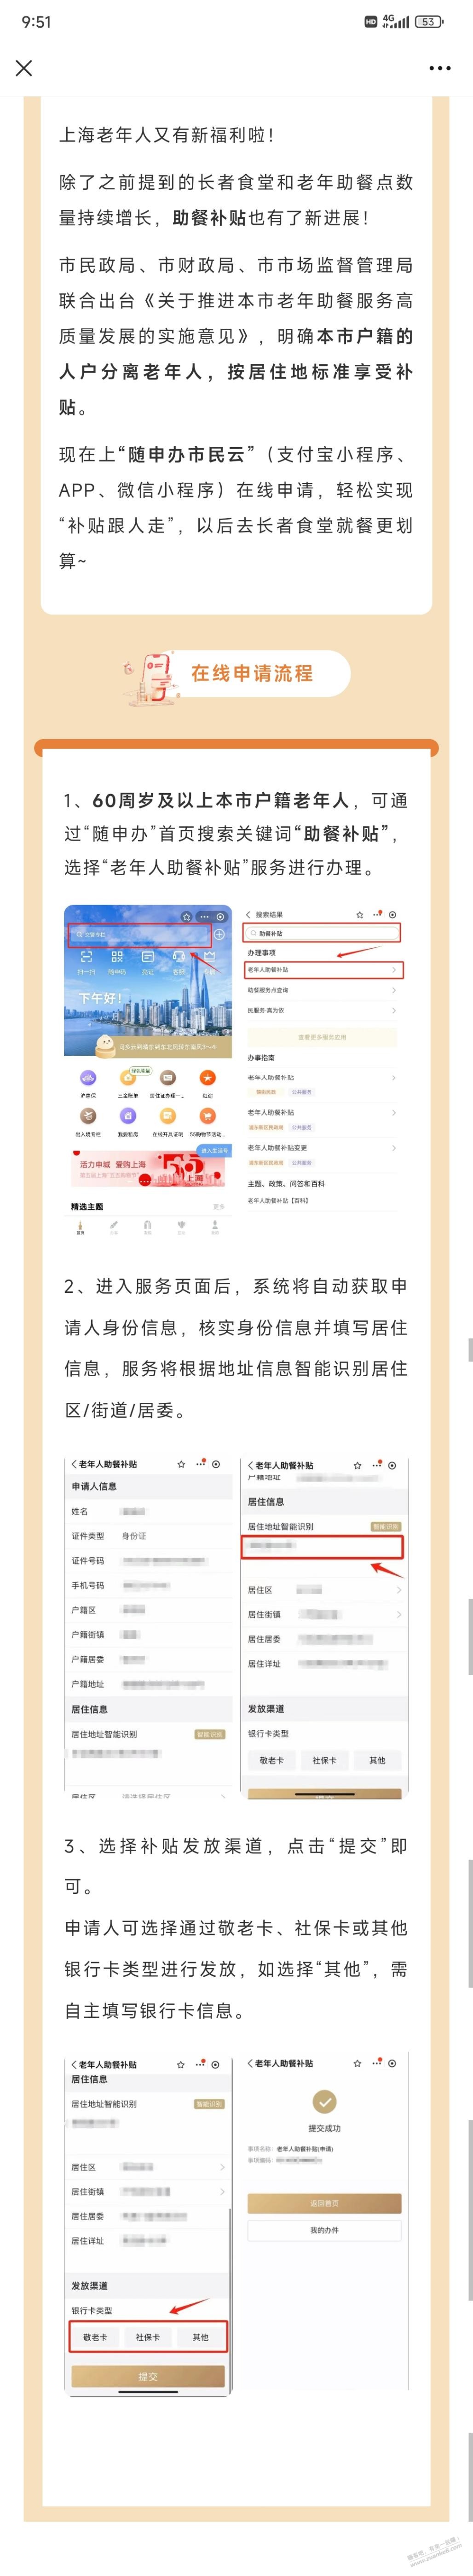 上海60周岁老人助餐补贴-惠小助(52huixz.com)